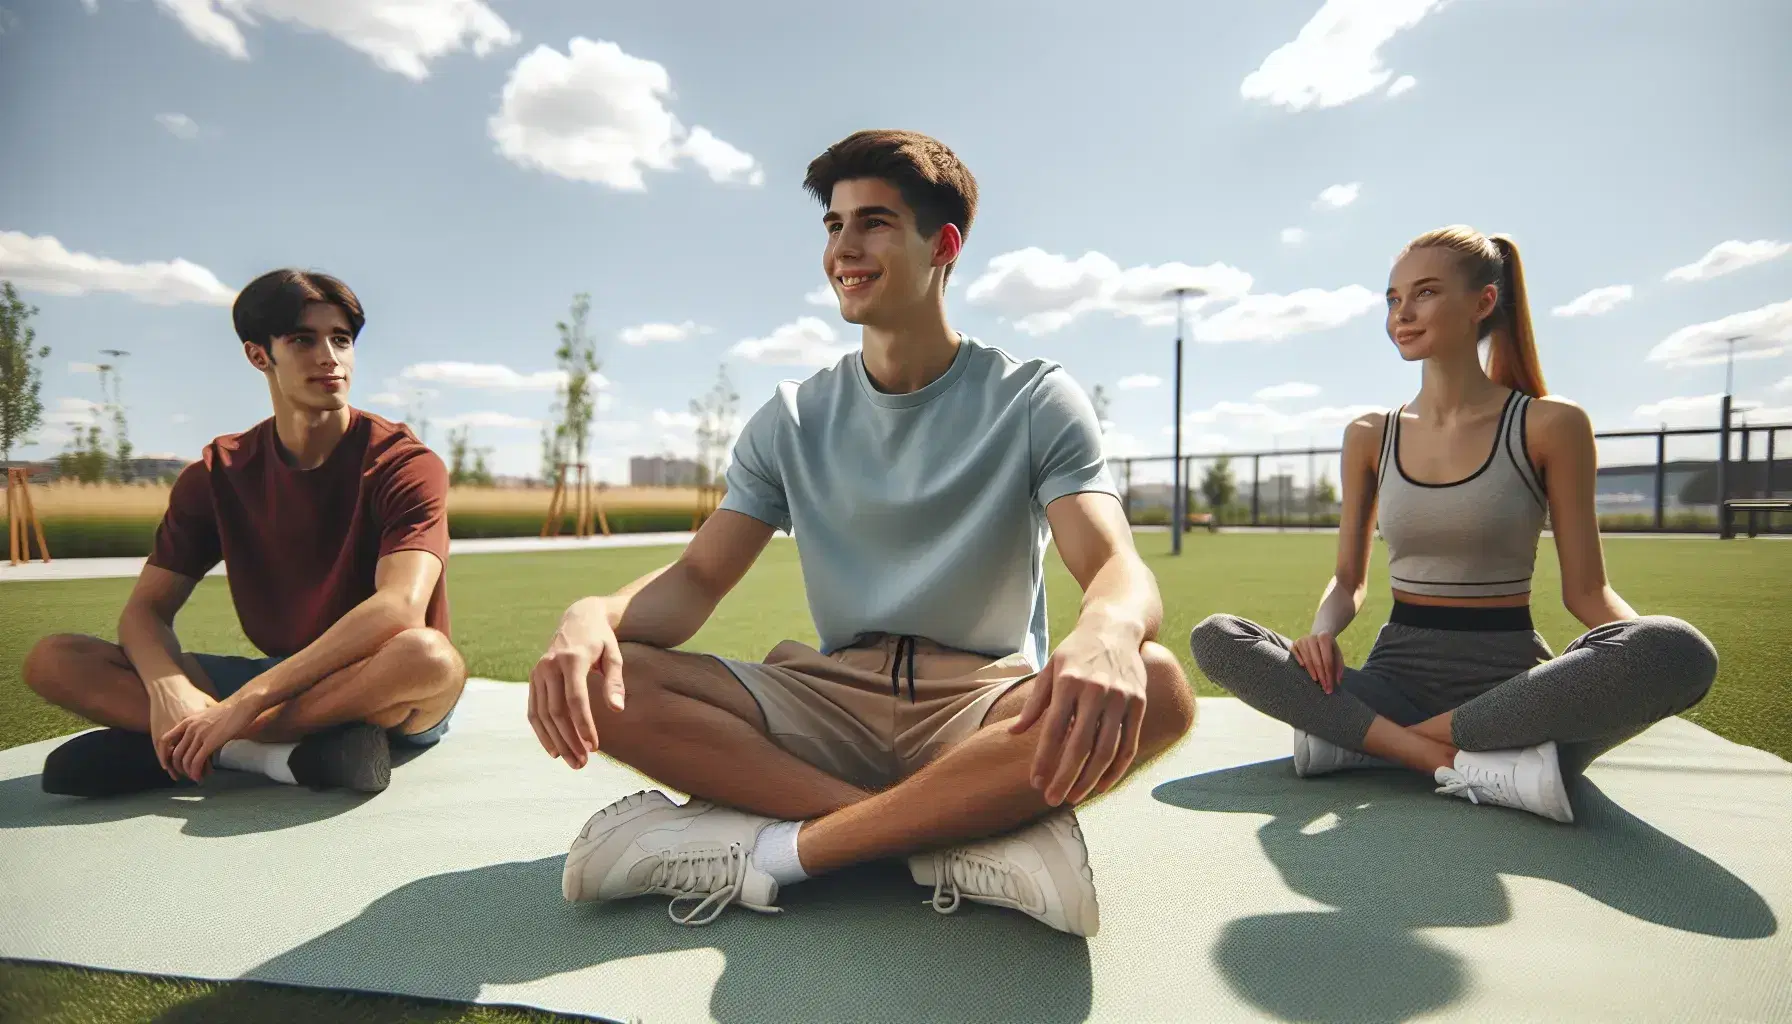 Tres jóvenes relajados disfrutan de un día soleado en el parque, sentados sobre una alfombra verde, rodeados de árboles y un cielo azul con nubes dispersas.